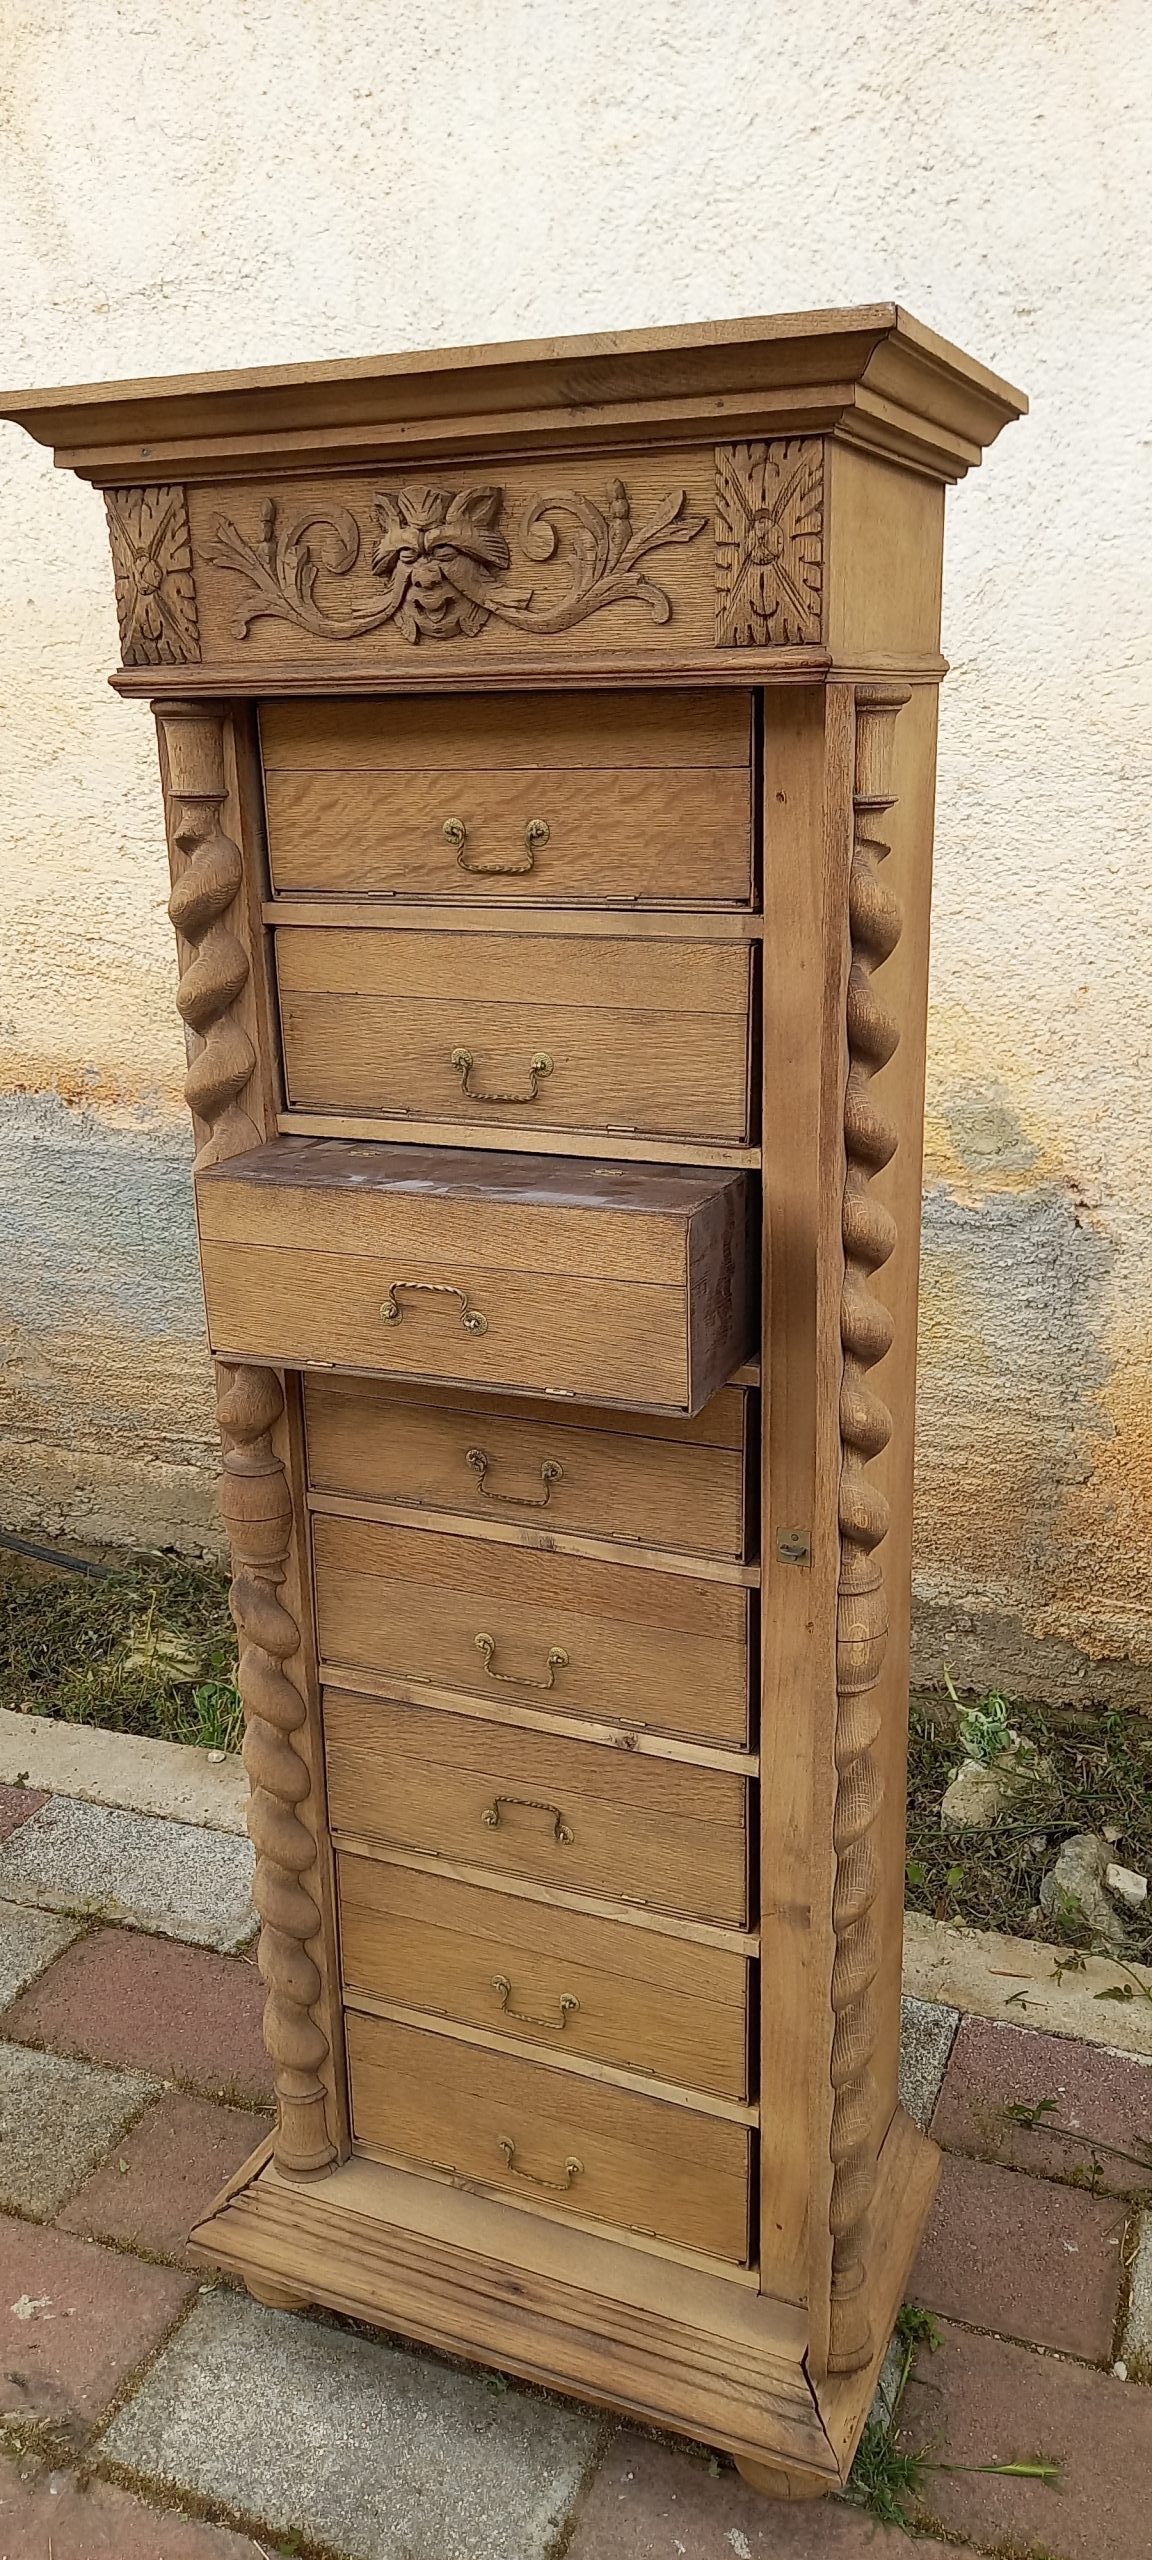 παλιό ξύλινο ερμάρι από καρυδιά, παλιο ντουλάπι, παλιό έπιπλο αποθήκευσης με οχτώ συρτάρακια-ντουλαπάκια που βγαίνουν και ξεδιπλώνουν,σκαλίσματα στα πλαινά και στο πάνω μέρος και αναδιπλούμενη πλαινή κολώνα με κλειδαριά (λειπει το κλειδί)